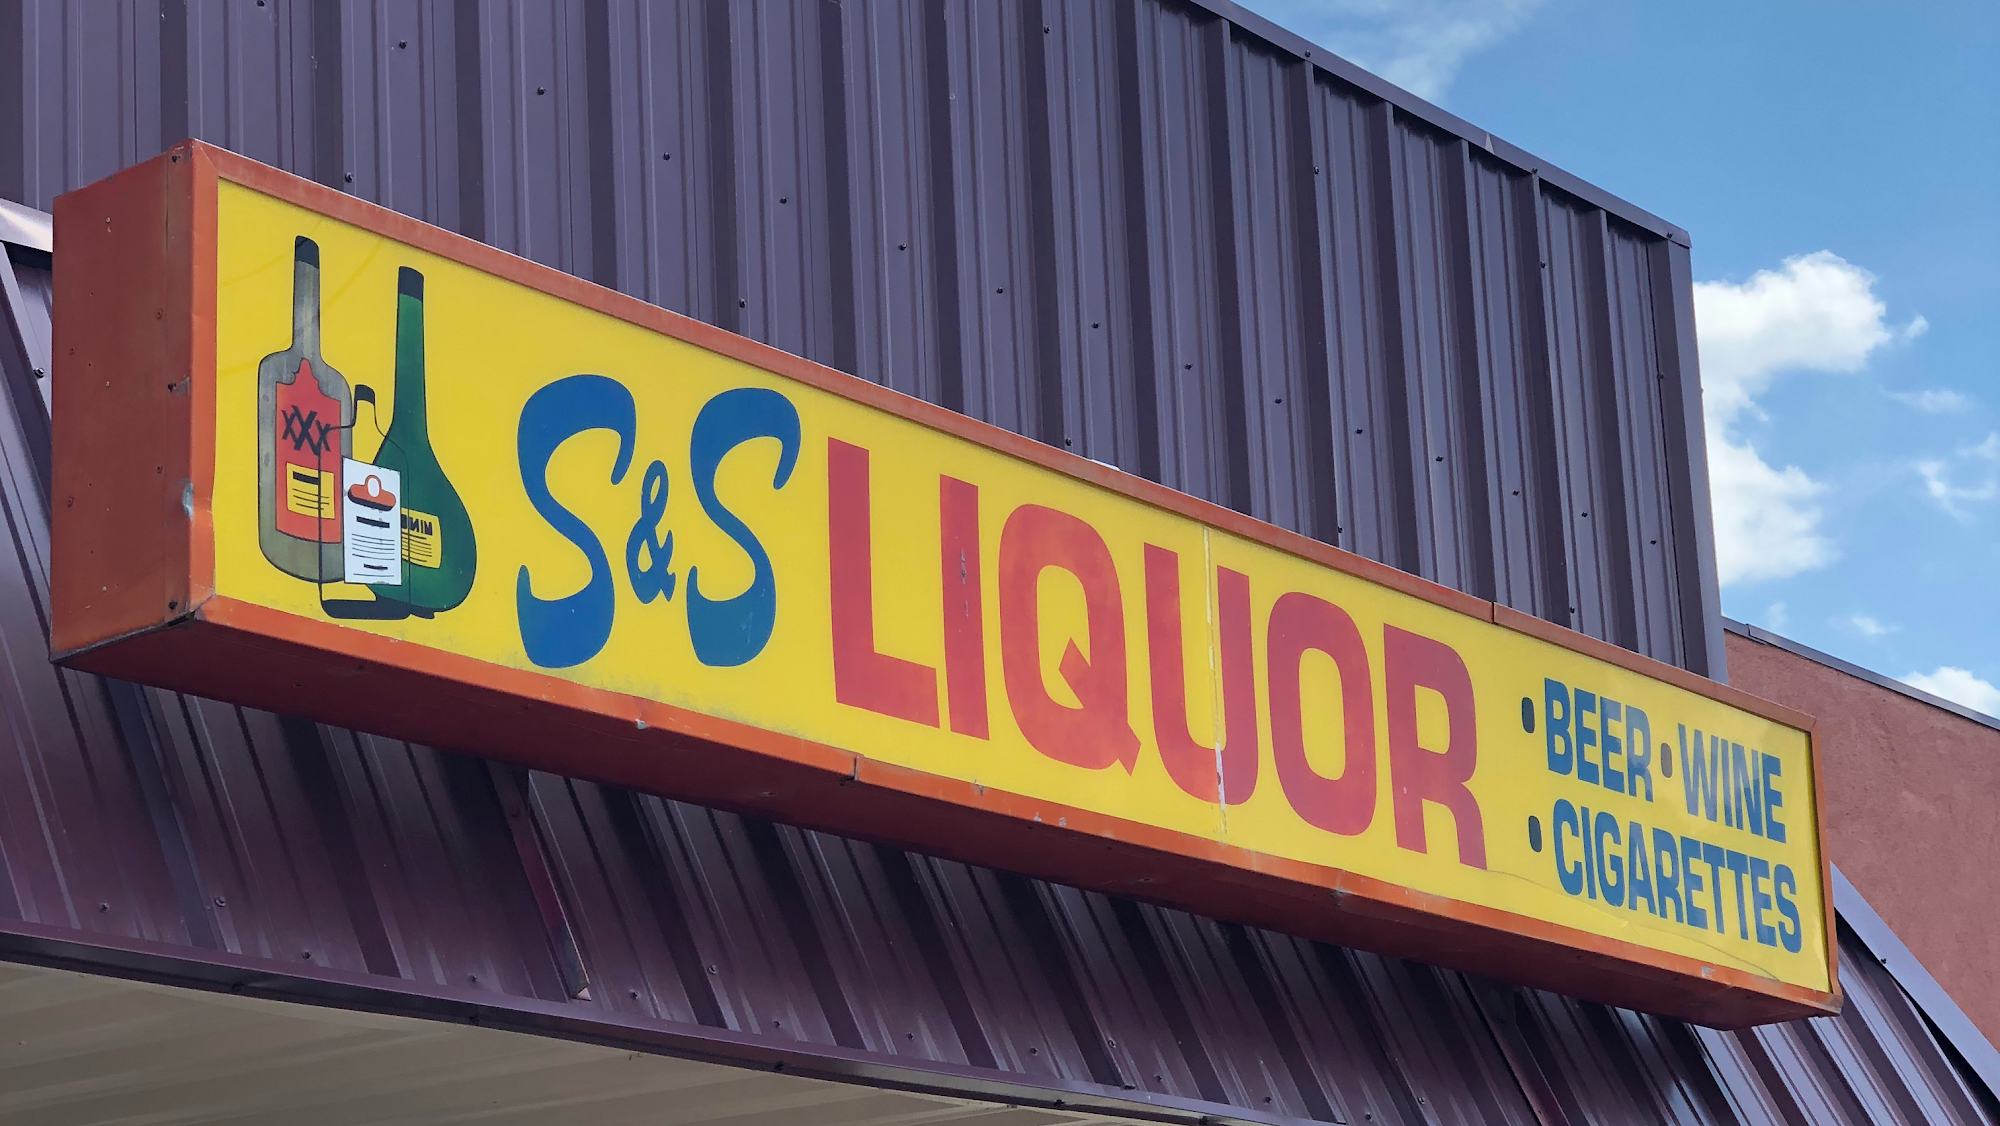 S&S Liquor Store